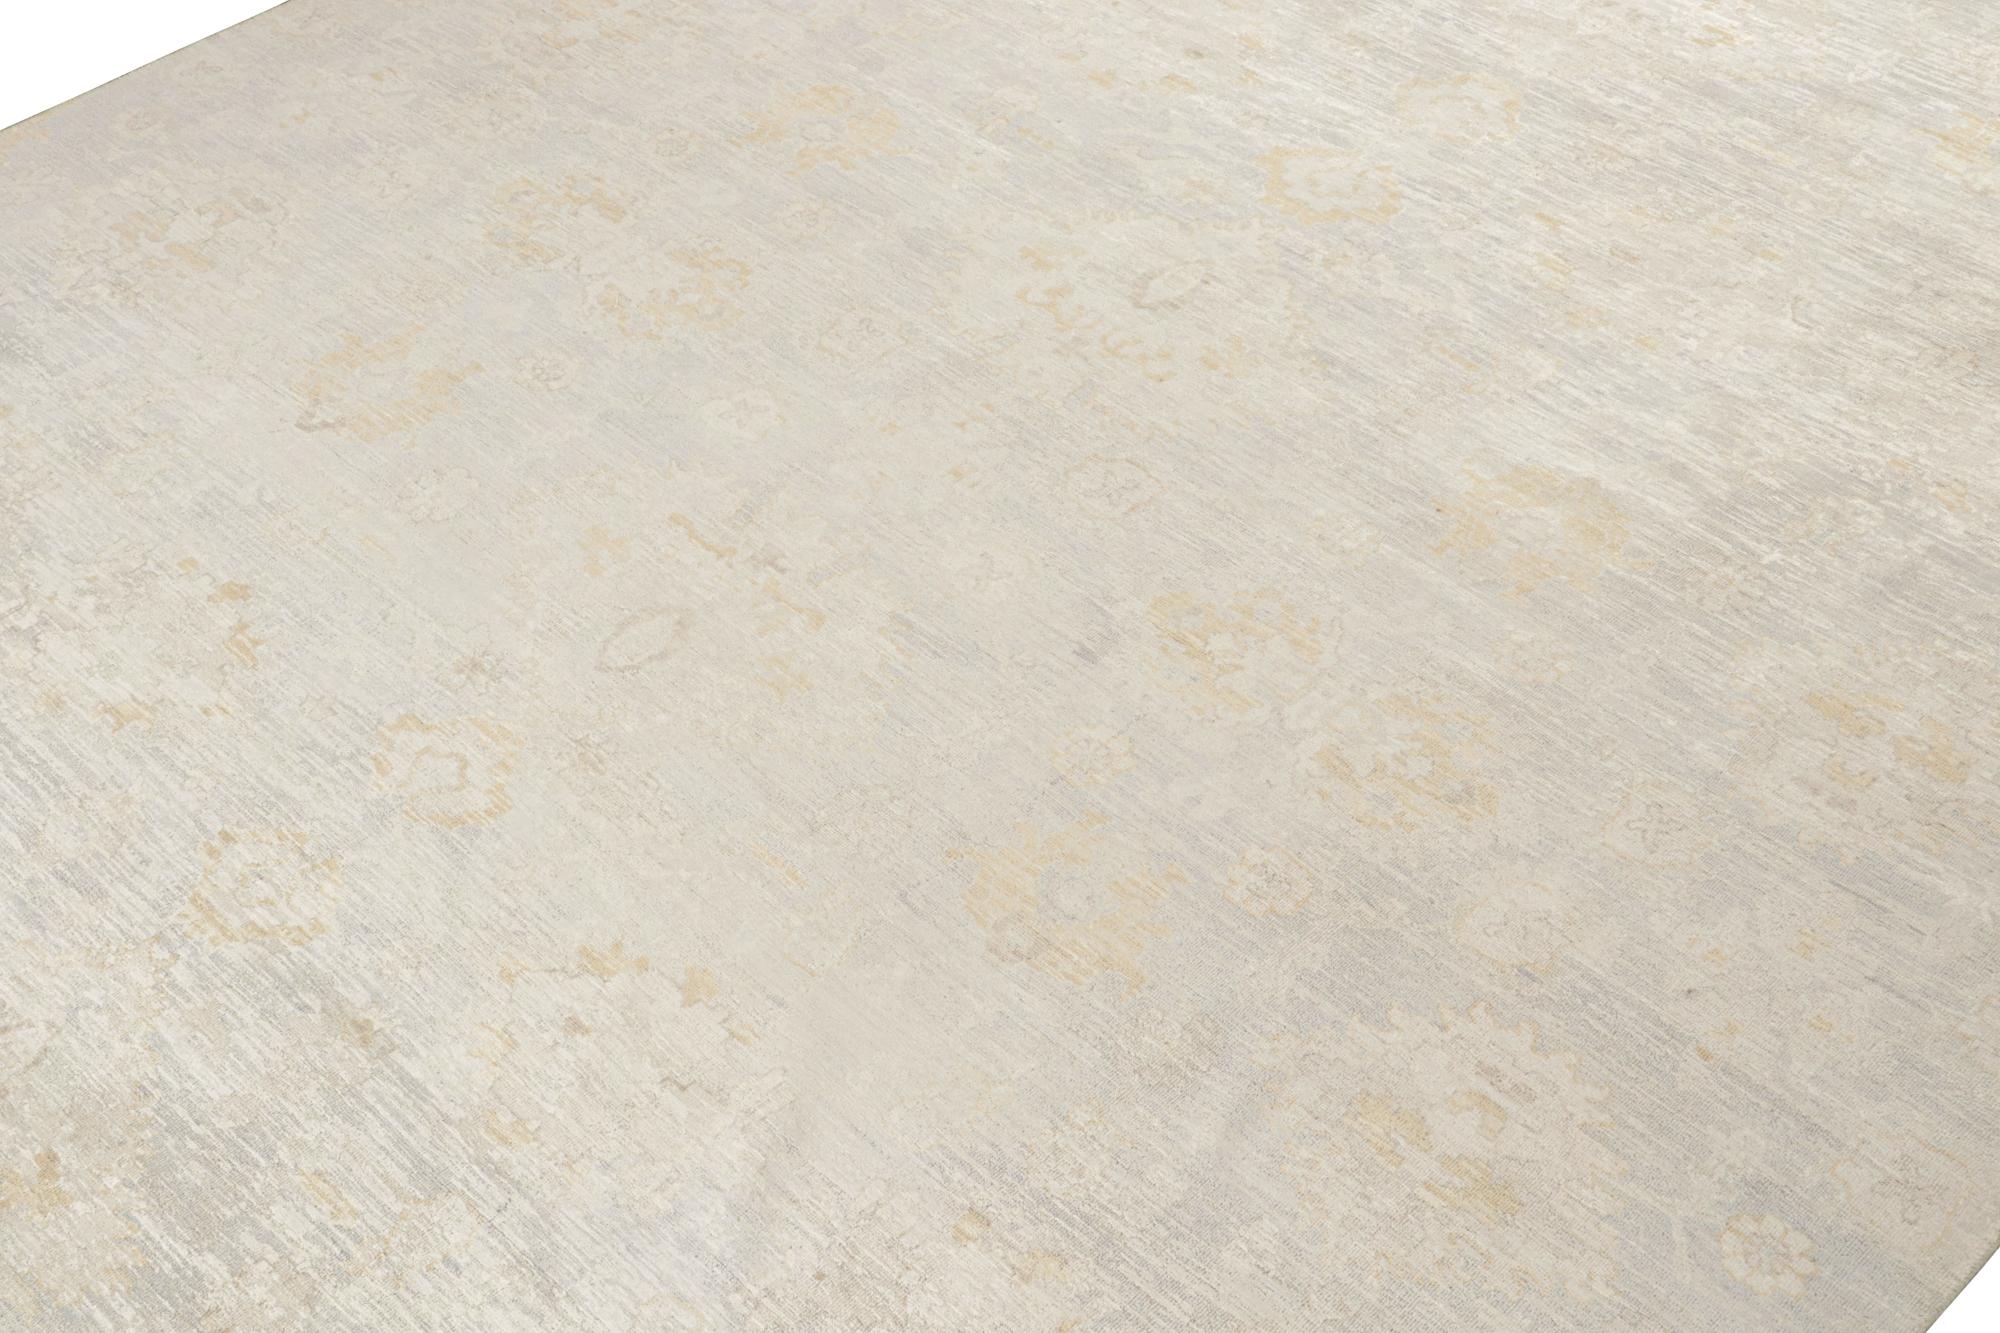 Der jüngste Neuzugang in der Modern Classics Collection'S von Rug & Kilim ist dieser 12x15 große Teppich, der klassischen Stil und elegante moderne Ästhetik vereint.

Weiter zum Design:

Dieser Teppich gehört zu einer neuen Linie dieser Kollektion,